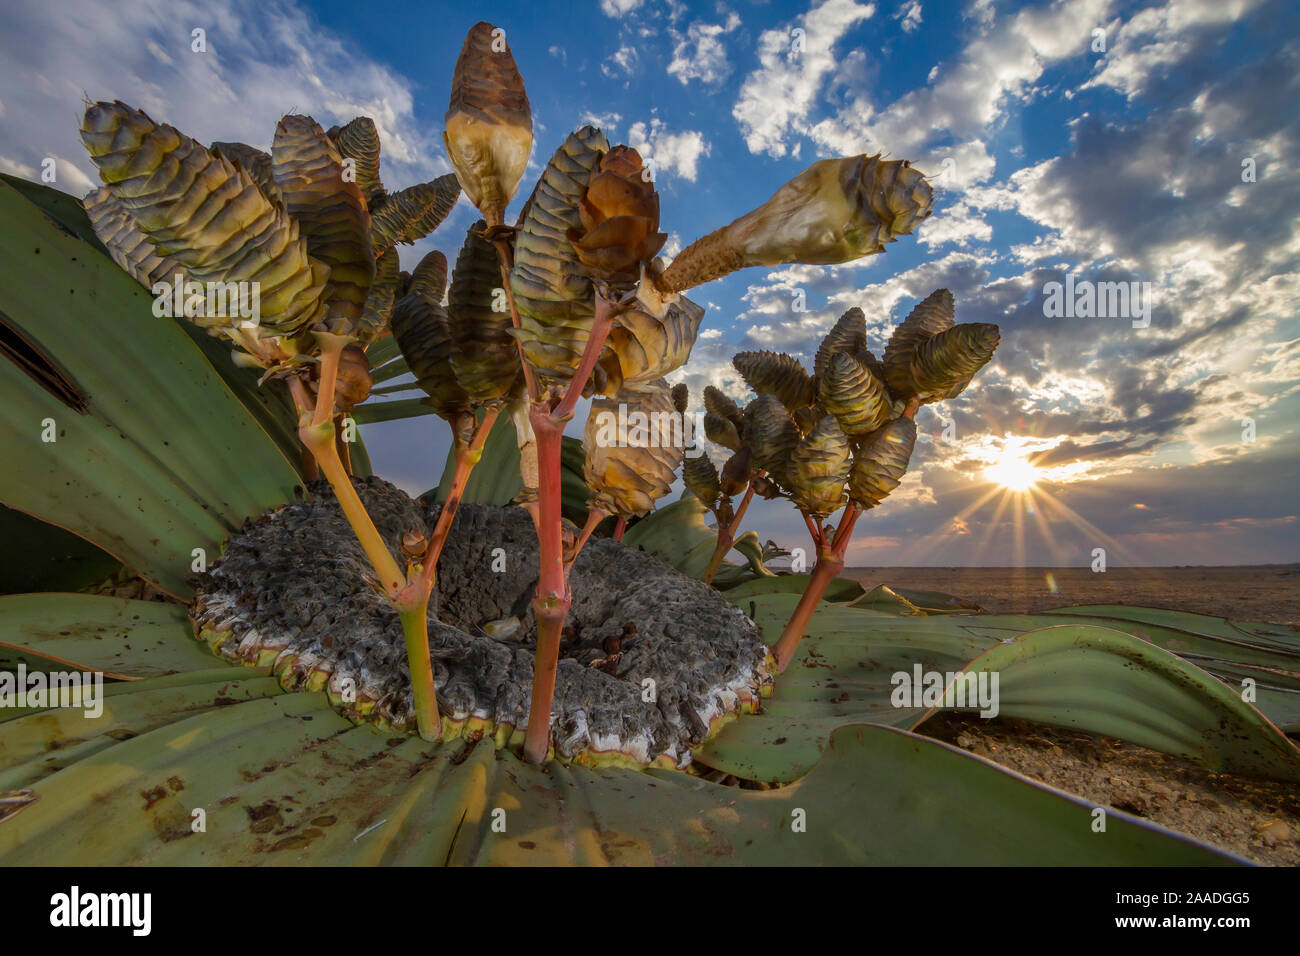 Coni di una femmina Welwitschia impianto (Welwitschia mirabilis) Swakopmund, Namib Desert, Namibia. Essi sono tra i più antichi organismi sul pianeta: alcune persone potrebbero essere più di duemila anni. Vincitore di piante e funghi categoria di Wildlife Photographer of the Year concorrenza 2018. Foto Stock